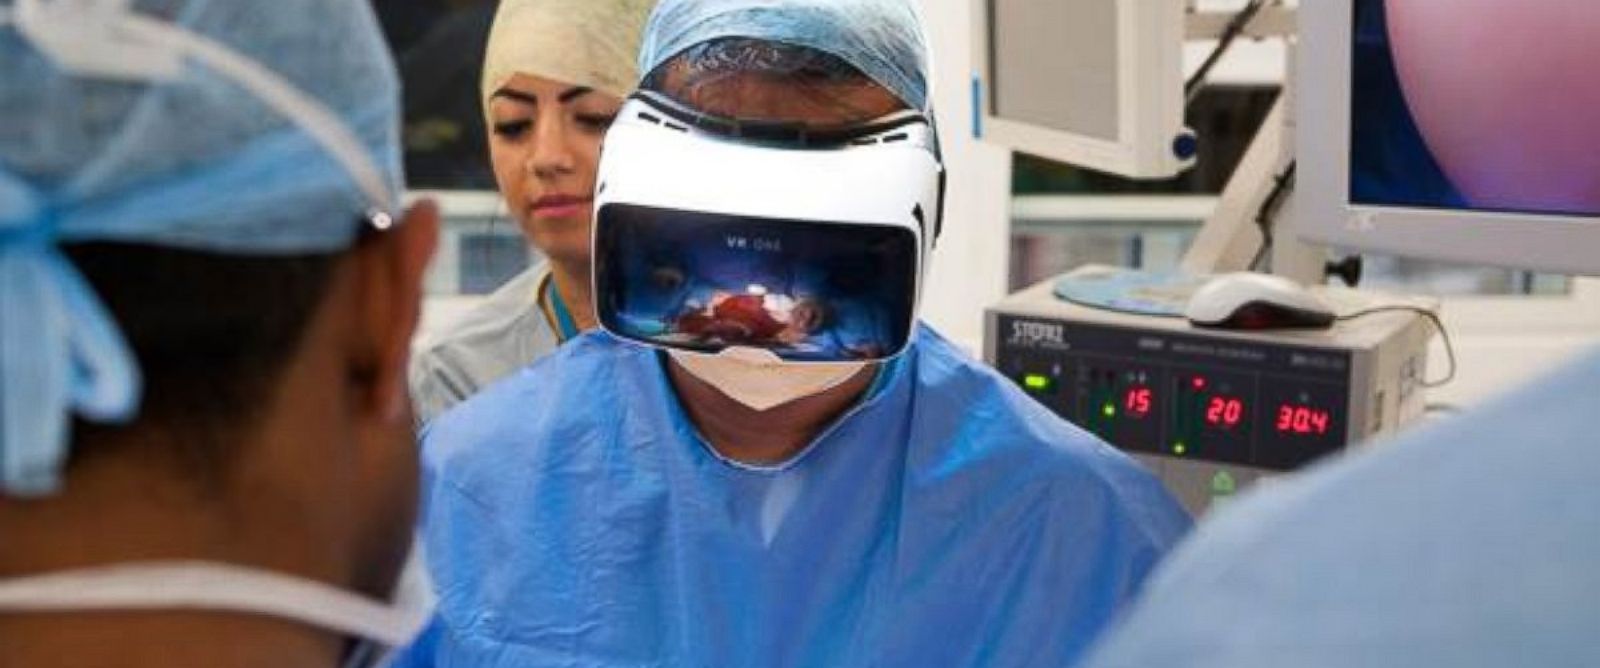 Surgery - virtual reality